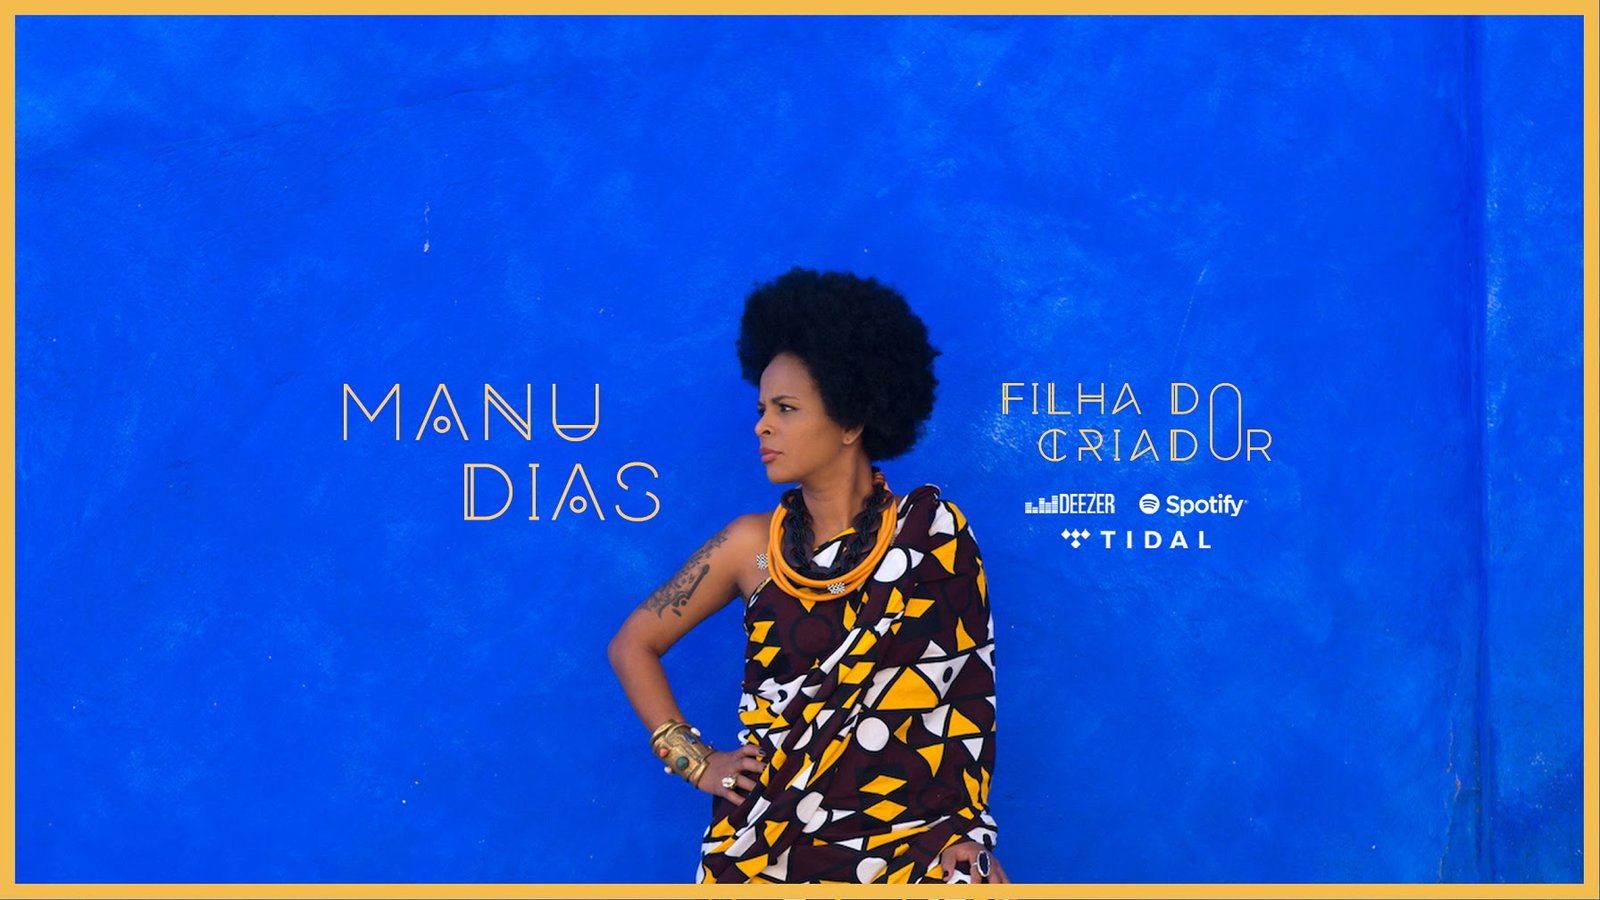 Manu Dias lança single empoderado “Filha do Criador”